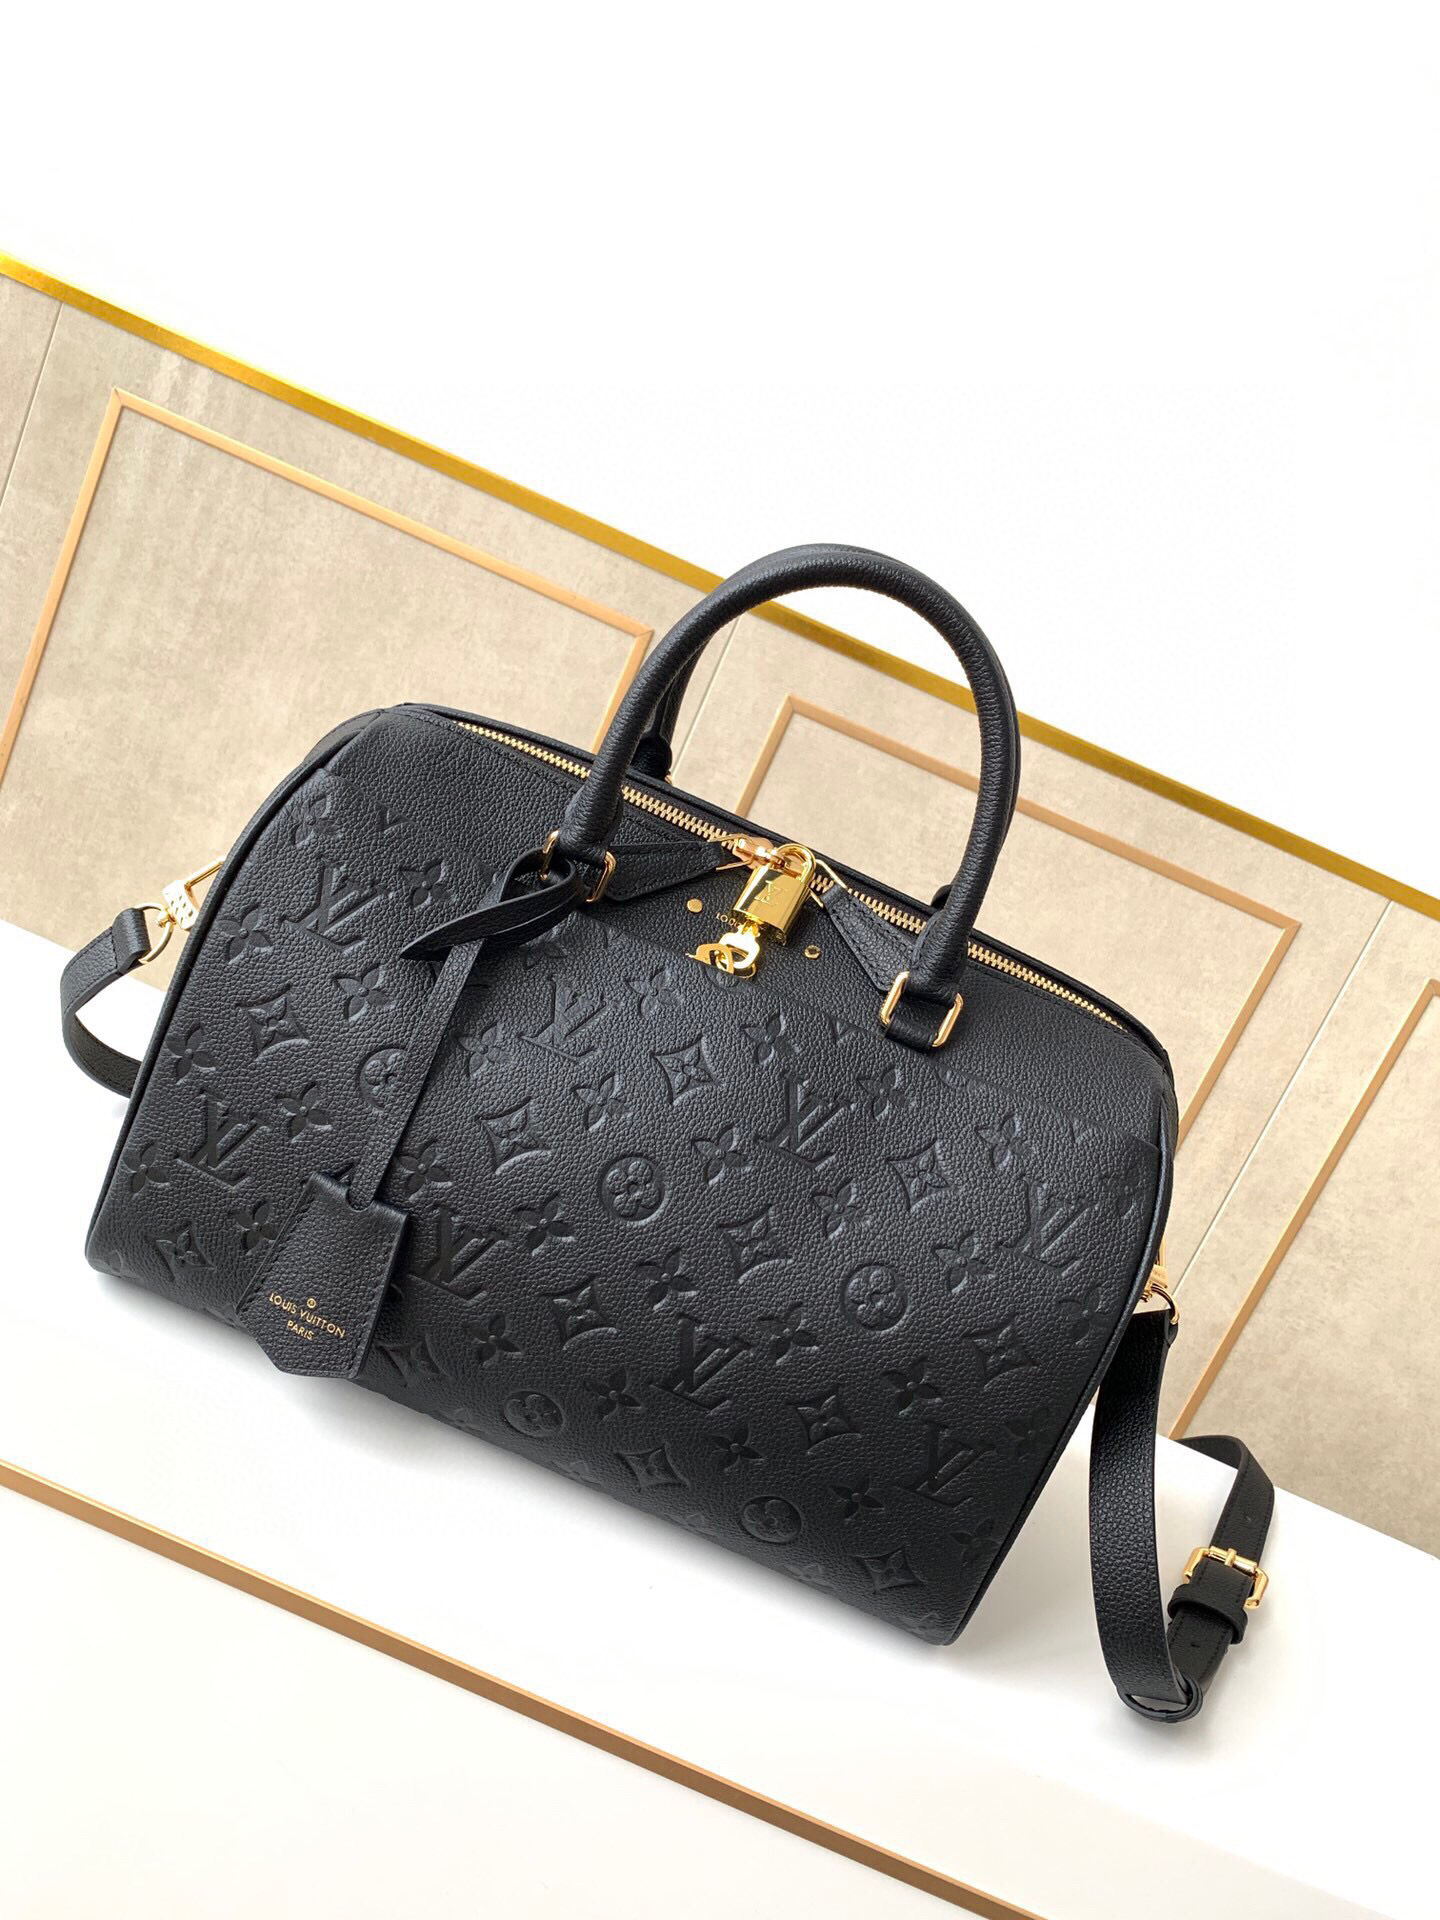 Louis Vuitton Monogram Empreinte Speedy Bandoulier Black M44736